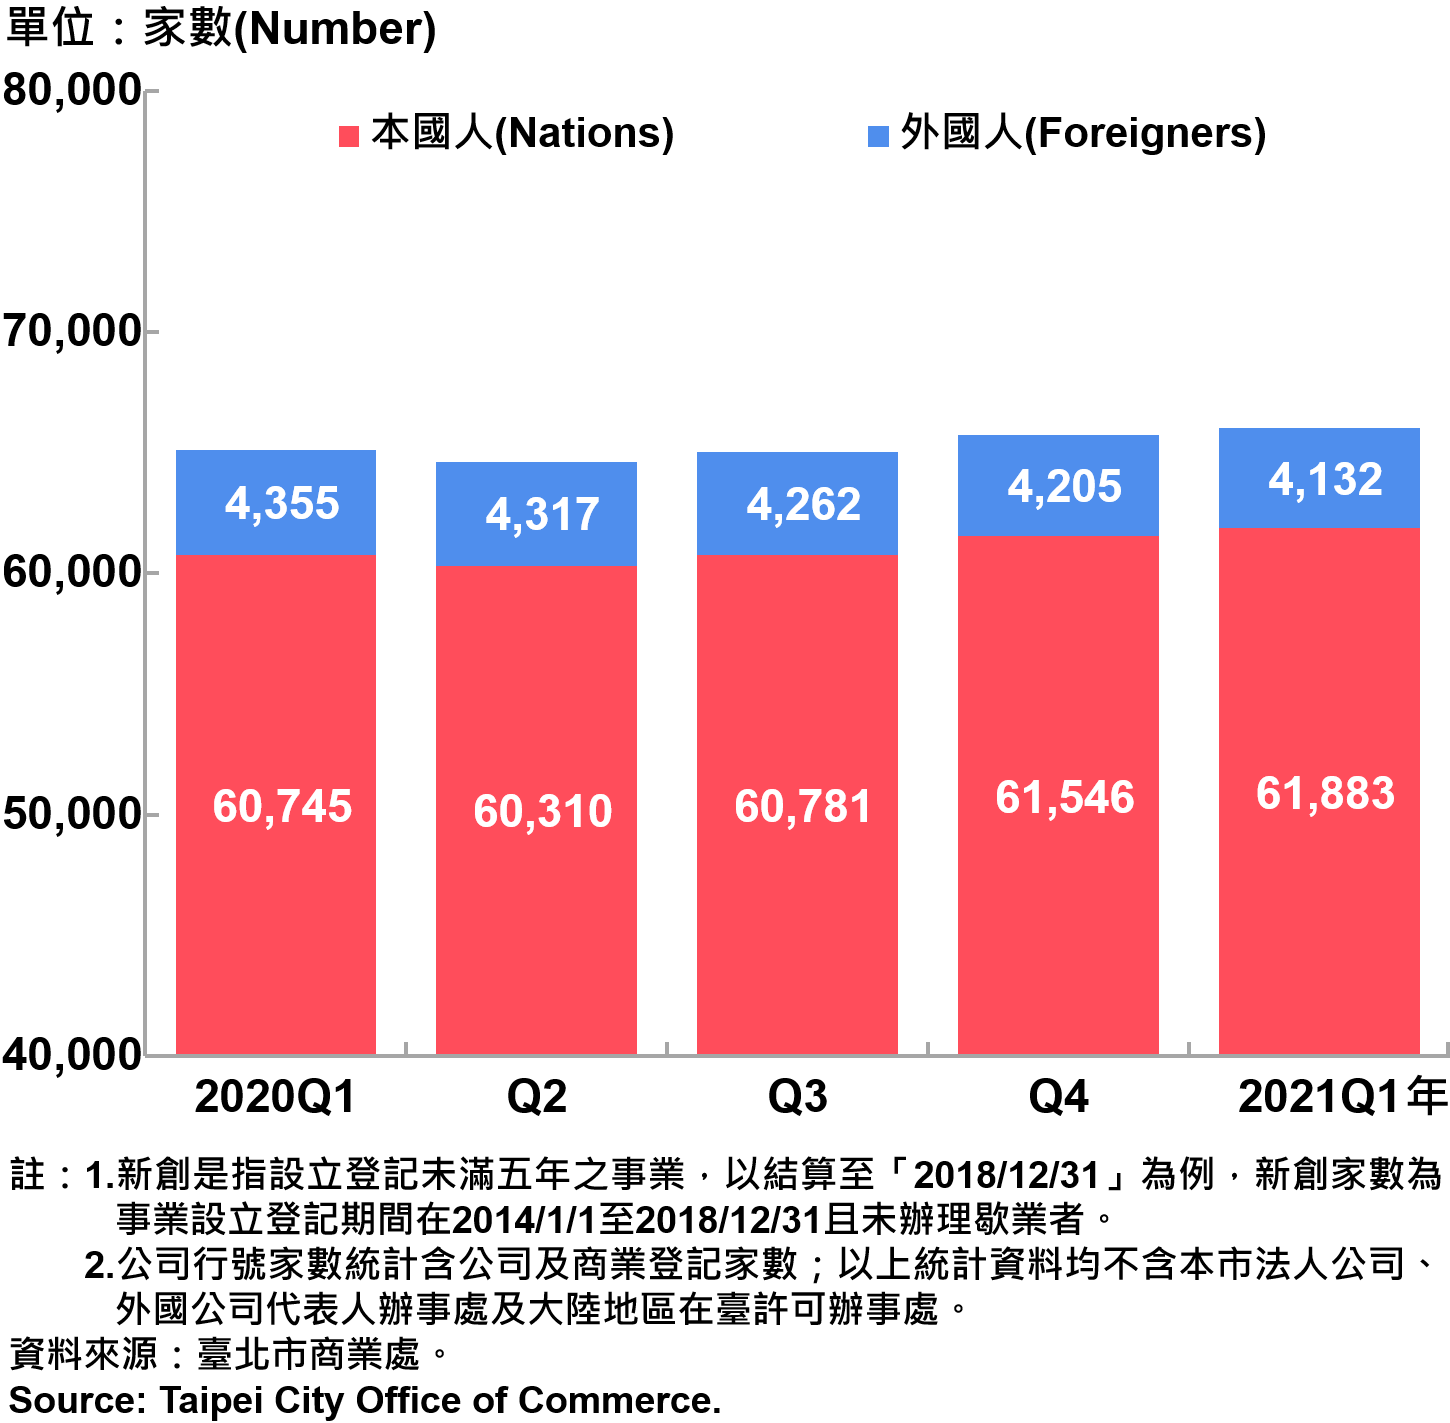 臺北市新創公司負責人-本國人與外國人分布情形-現存家數—2021Q1 Responsible Person of Newly Registered Companies In Taipei City by Nationality - Number of Current—2021Q1